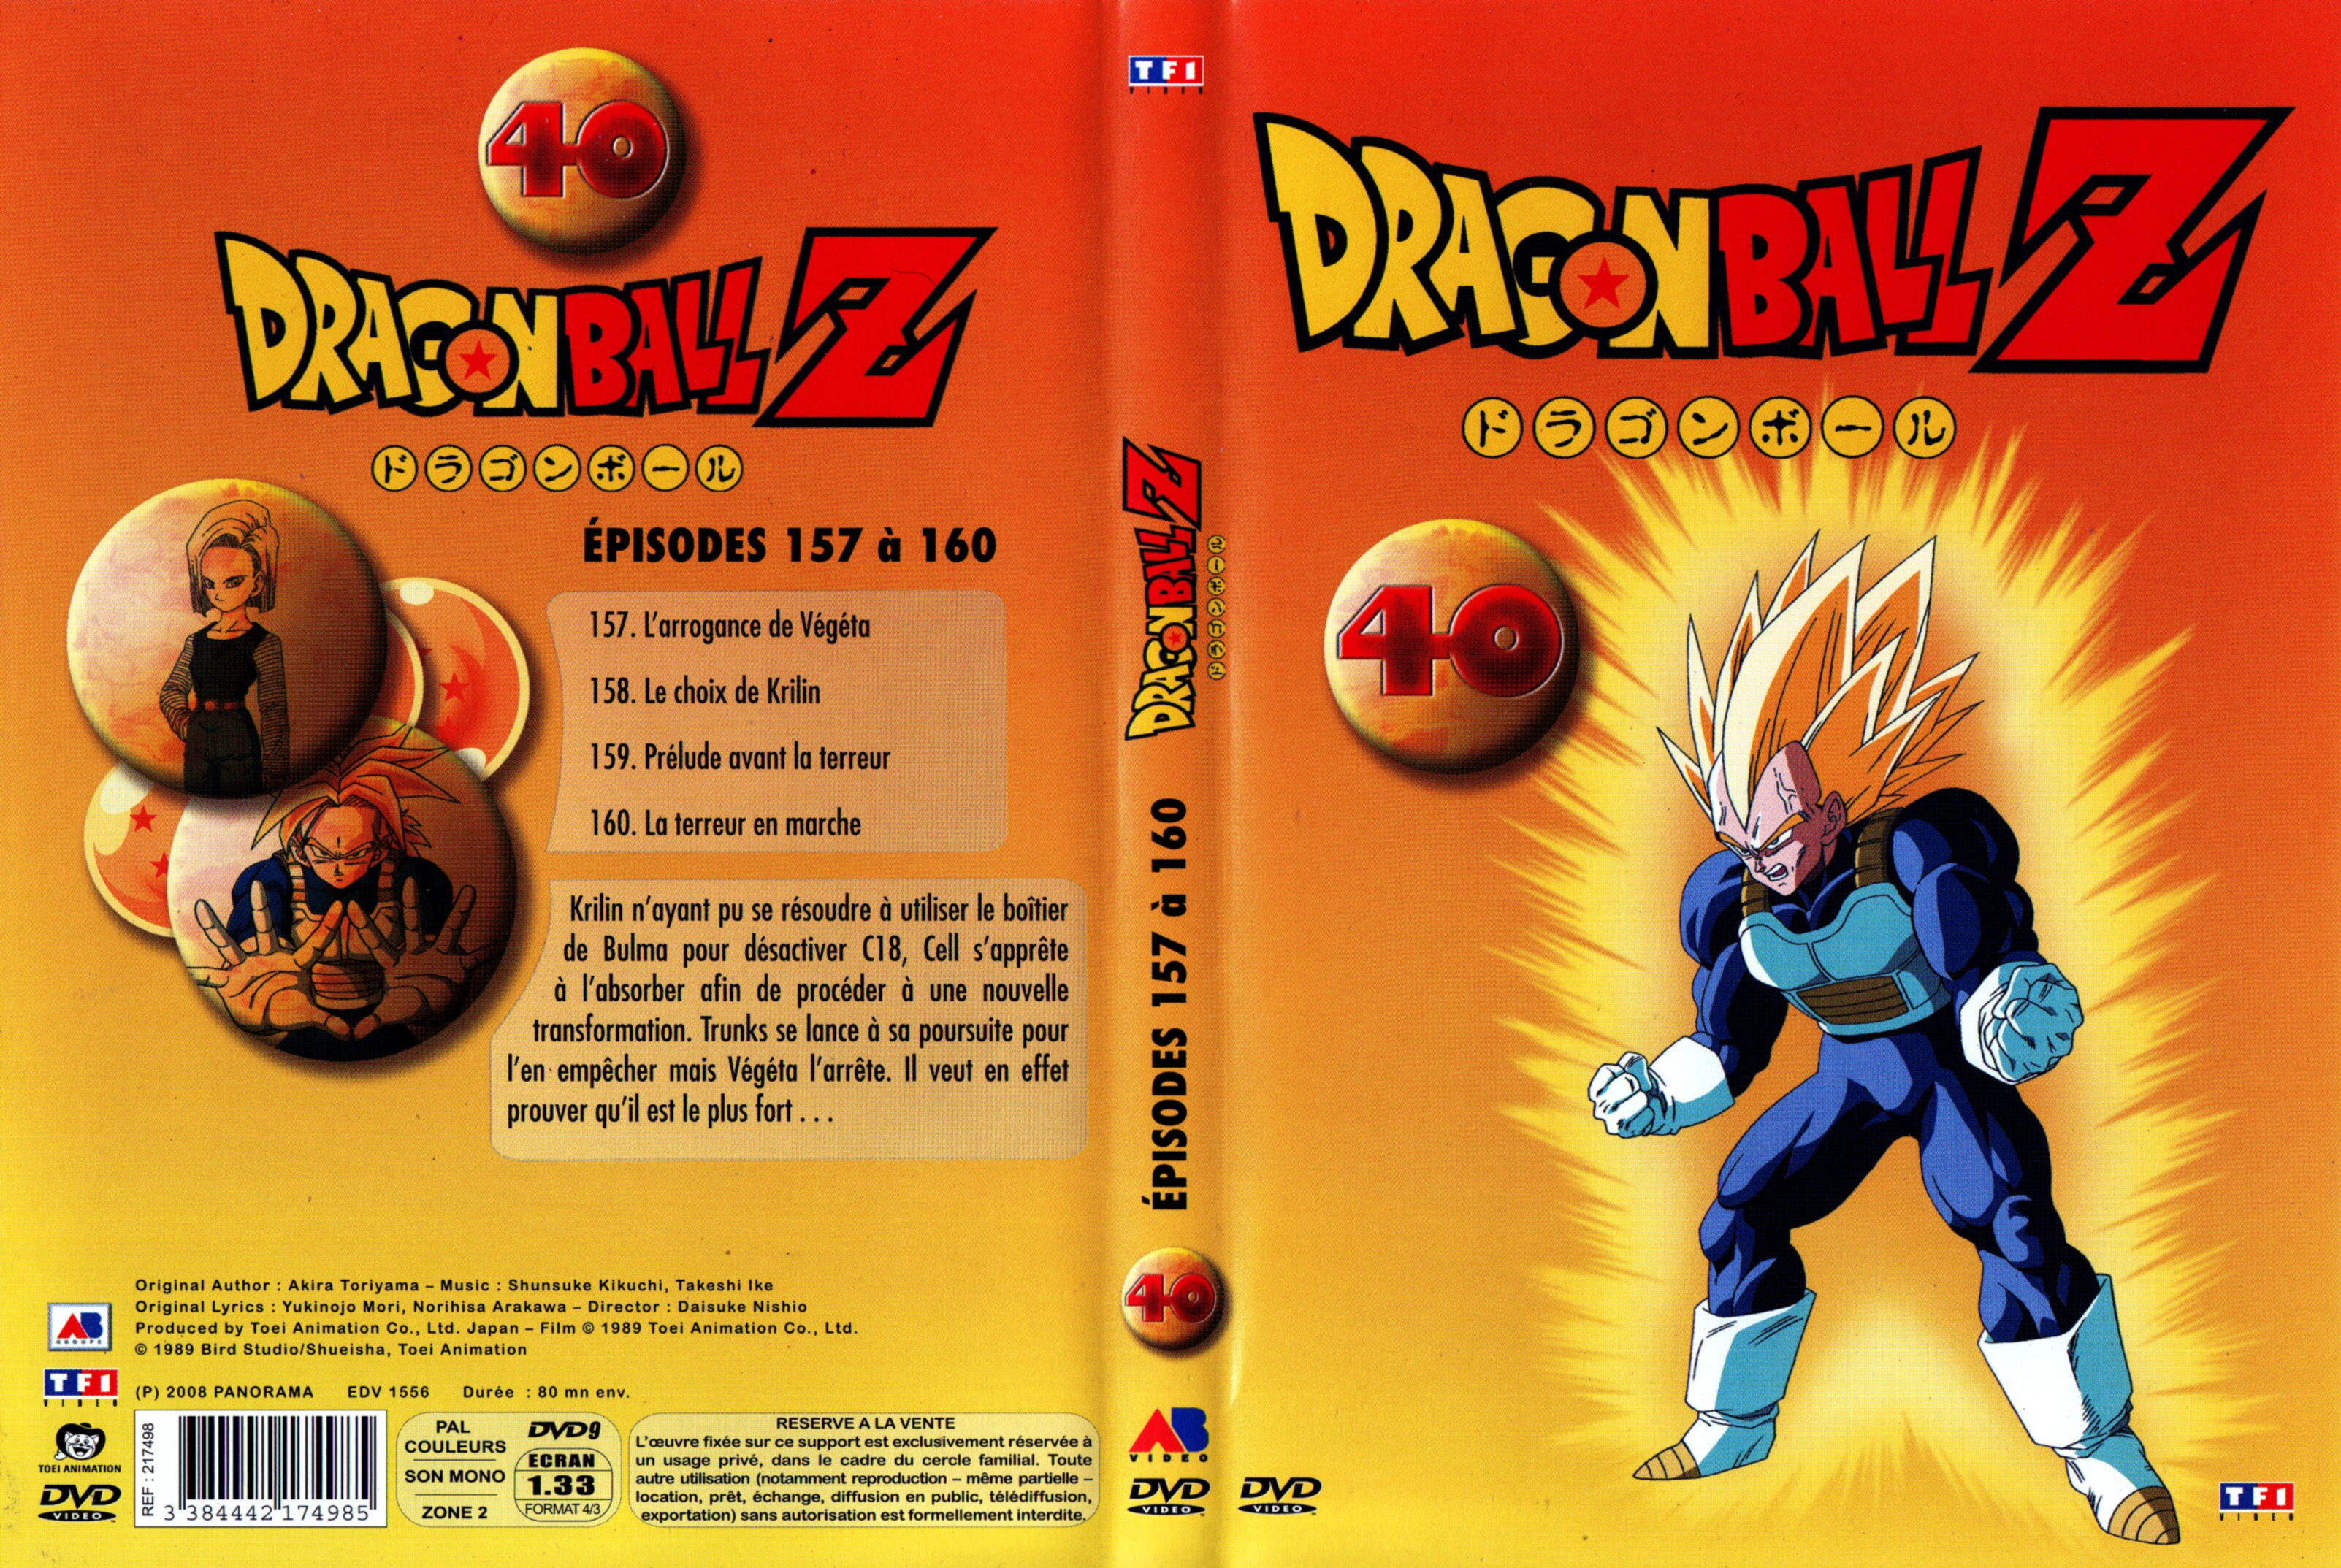 Jaquette DVD Dragon Ball Z vol 40 v2